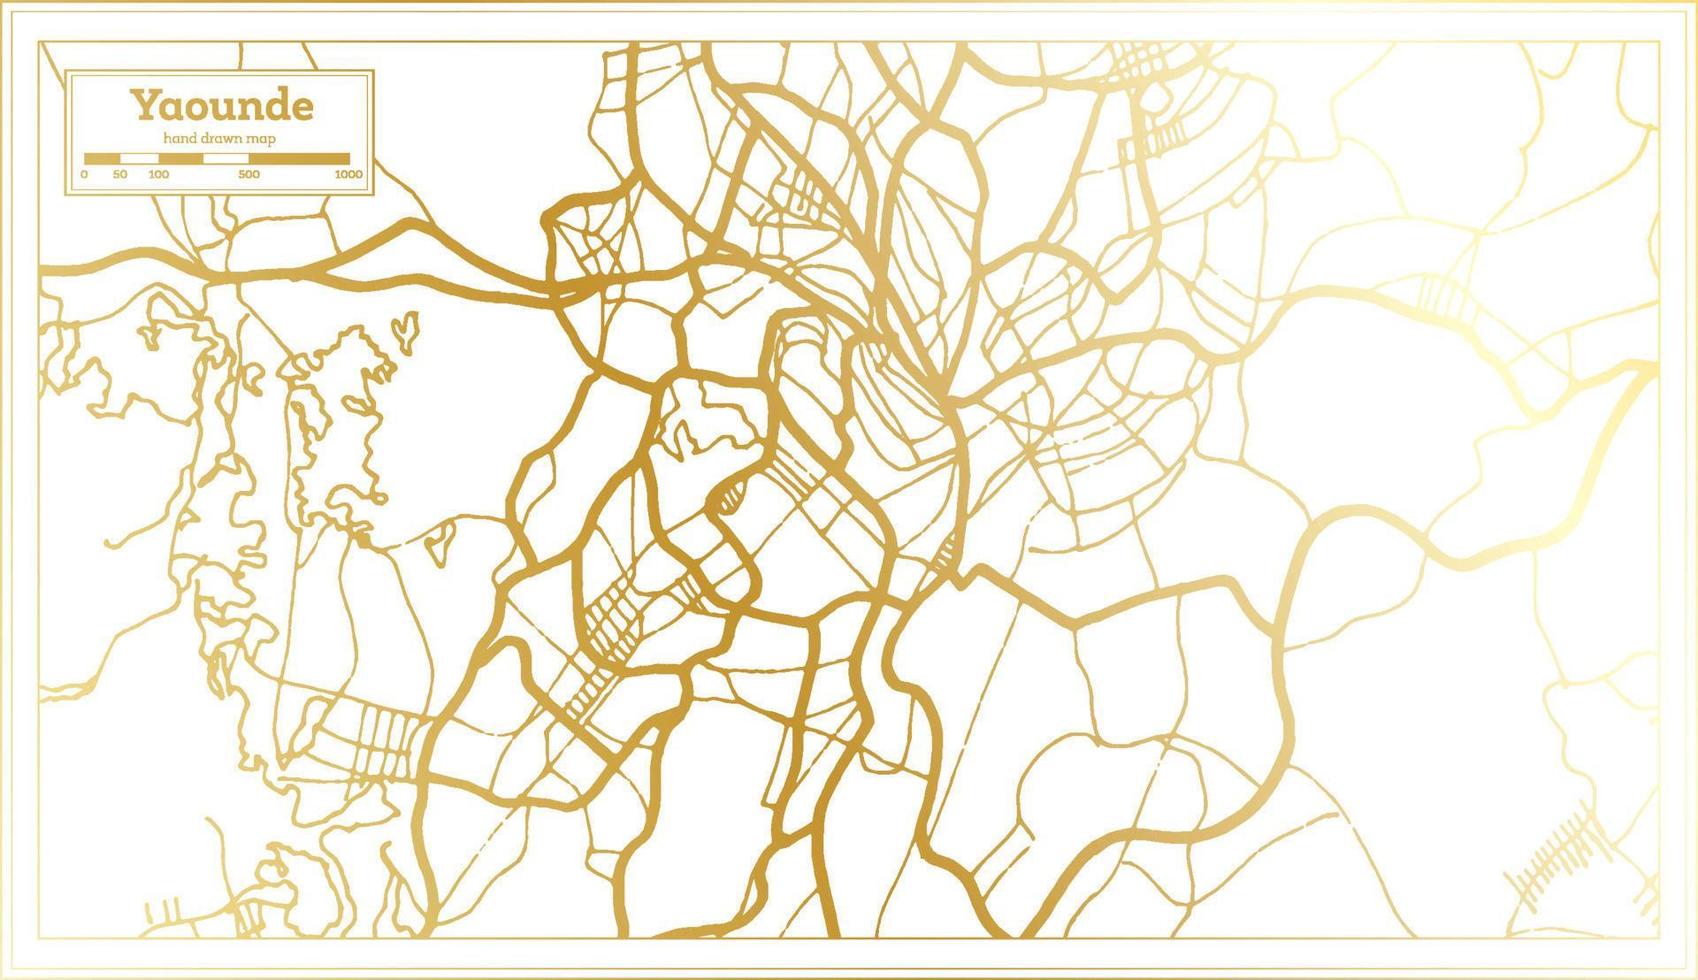 plan de la ville de yaounde cameroun dans un style rétro de couleur dorée. carte muette. vecteur